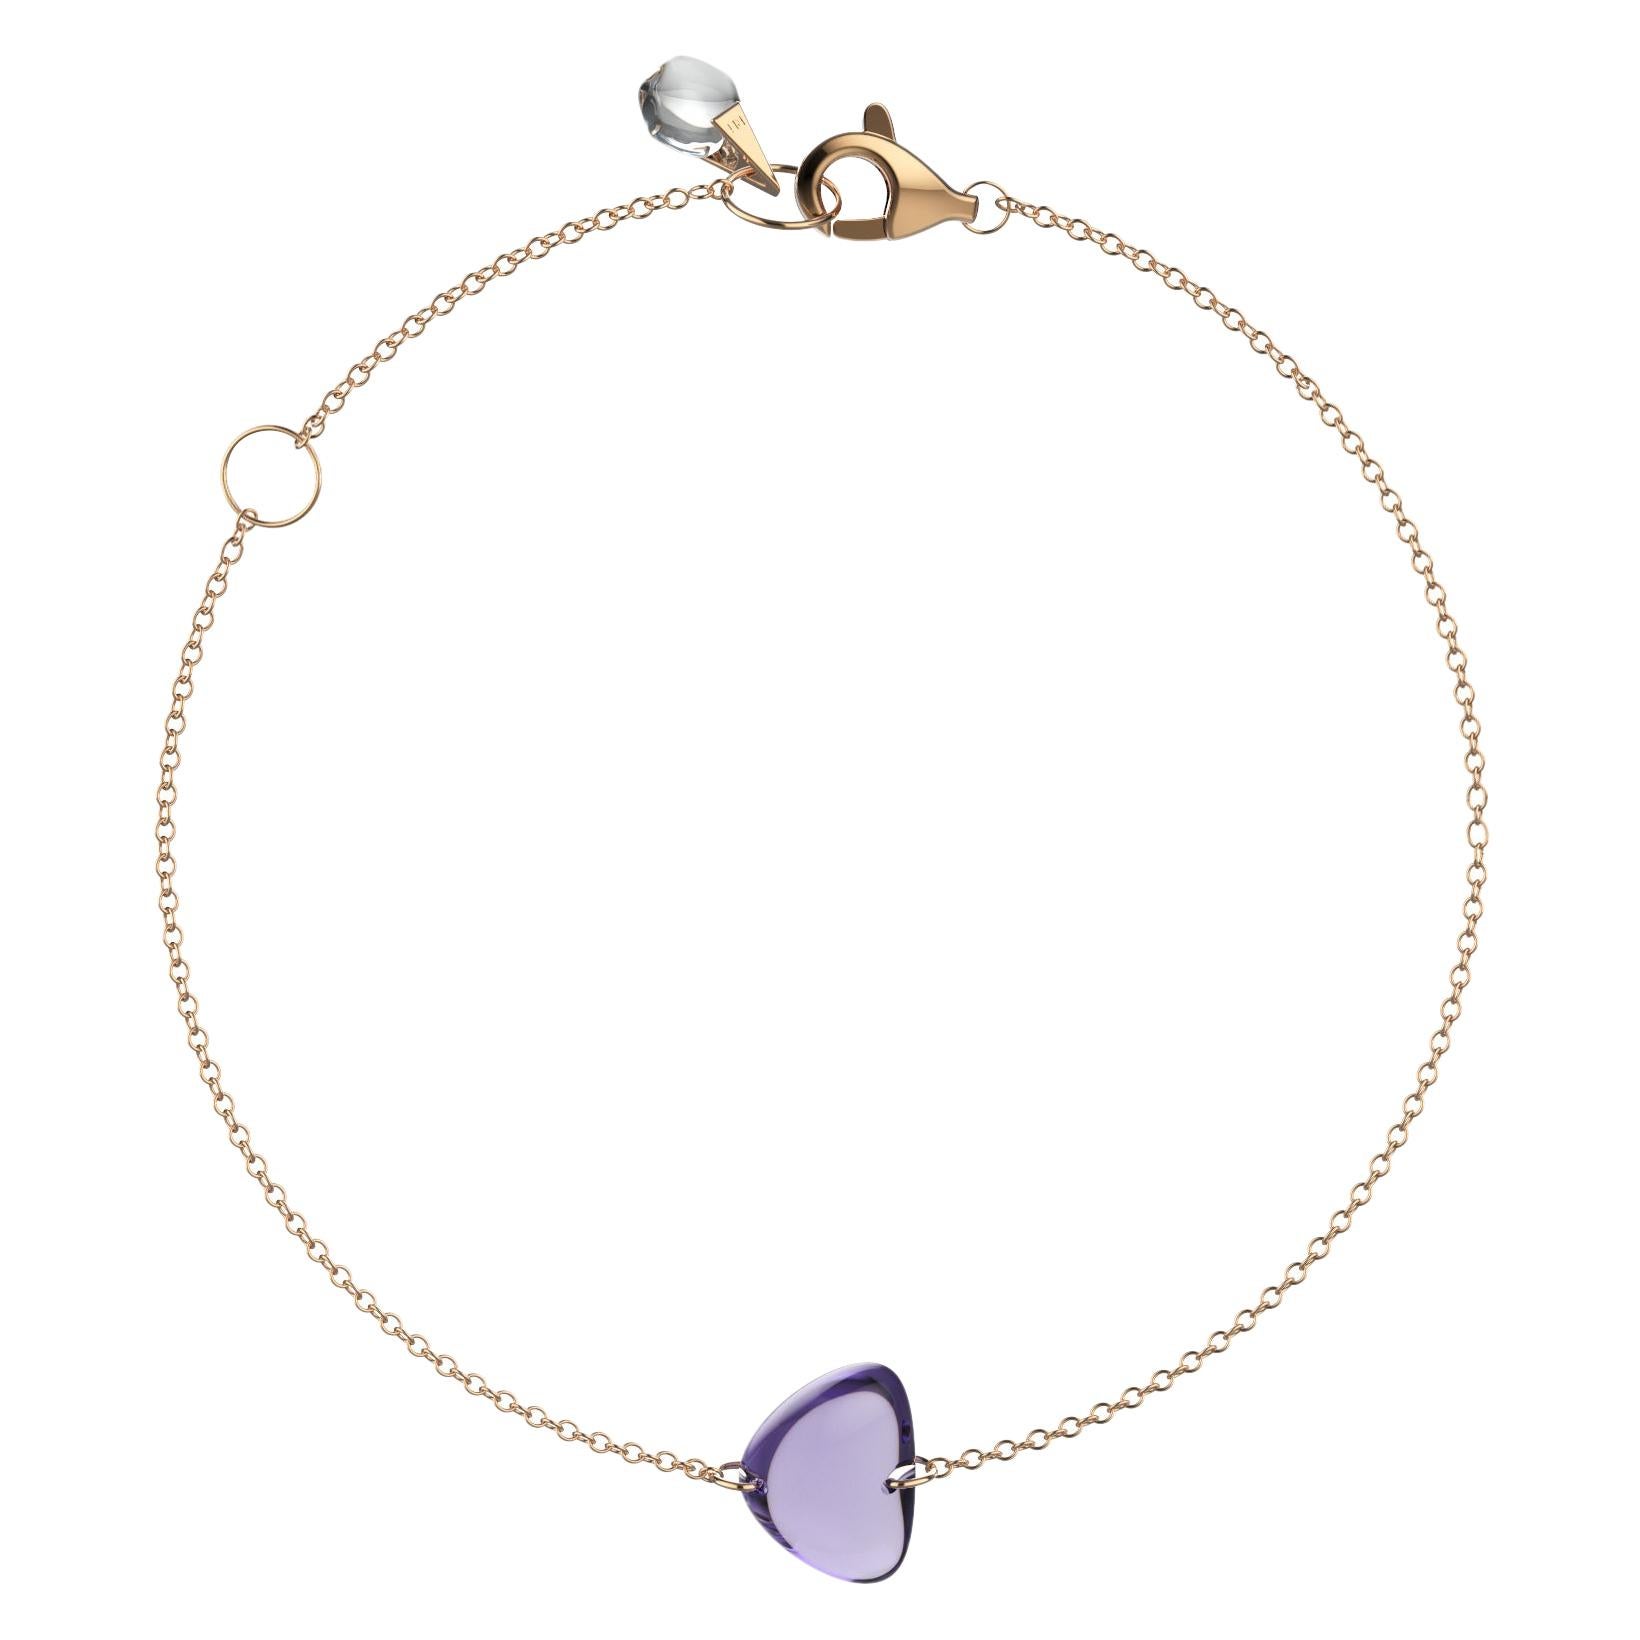 Rebecca Li Crystal Link Bracelet, 18 Karat Rose Gold with Amethyst and Crystal For Sale